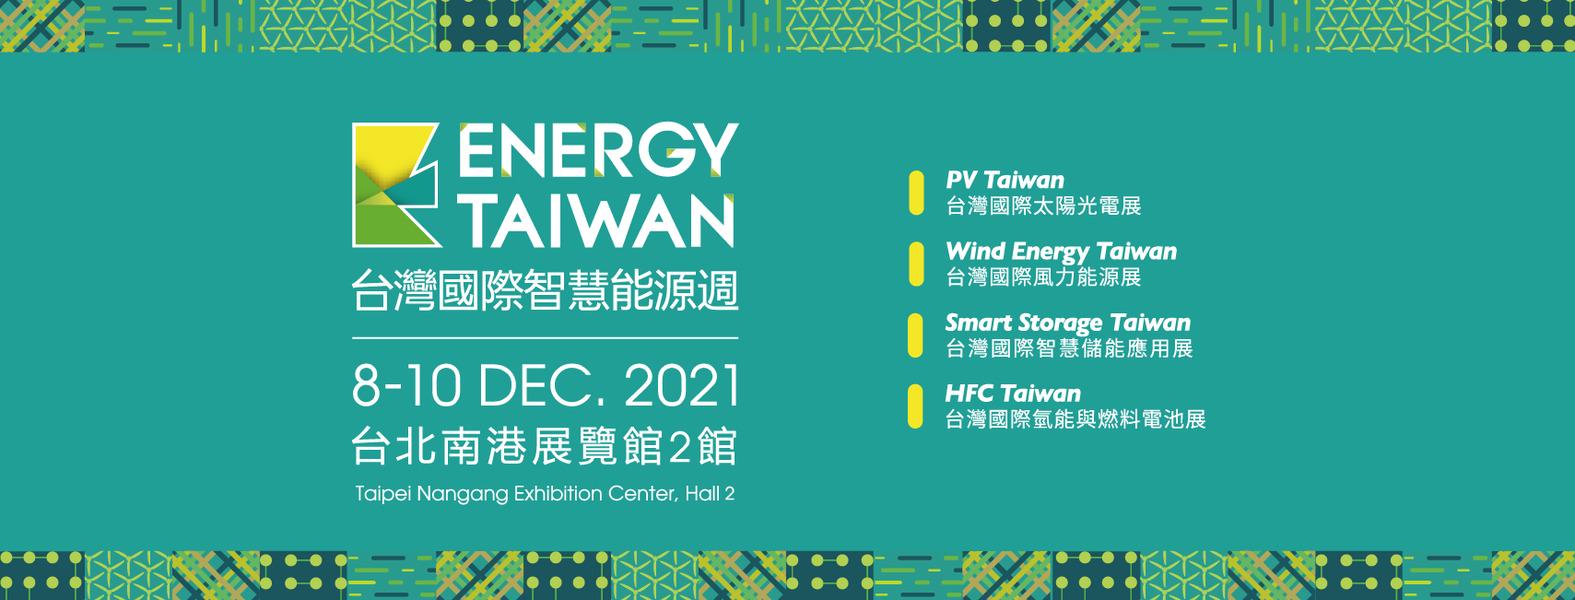 環保意識, 永續發展, 節能減碳, 再生能源, 風力發電, KingOne, 王一設計, 台灣國際智慧能源週, EnergyTaiwan